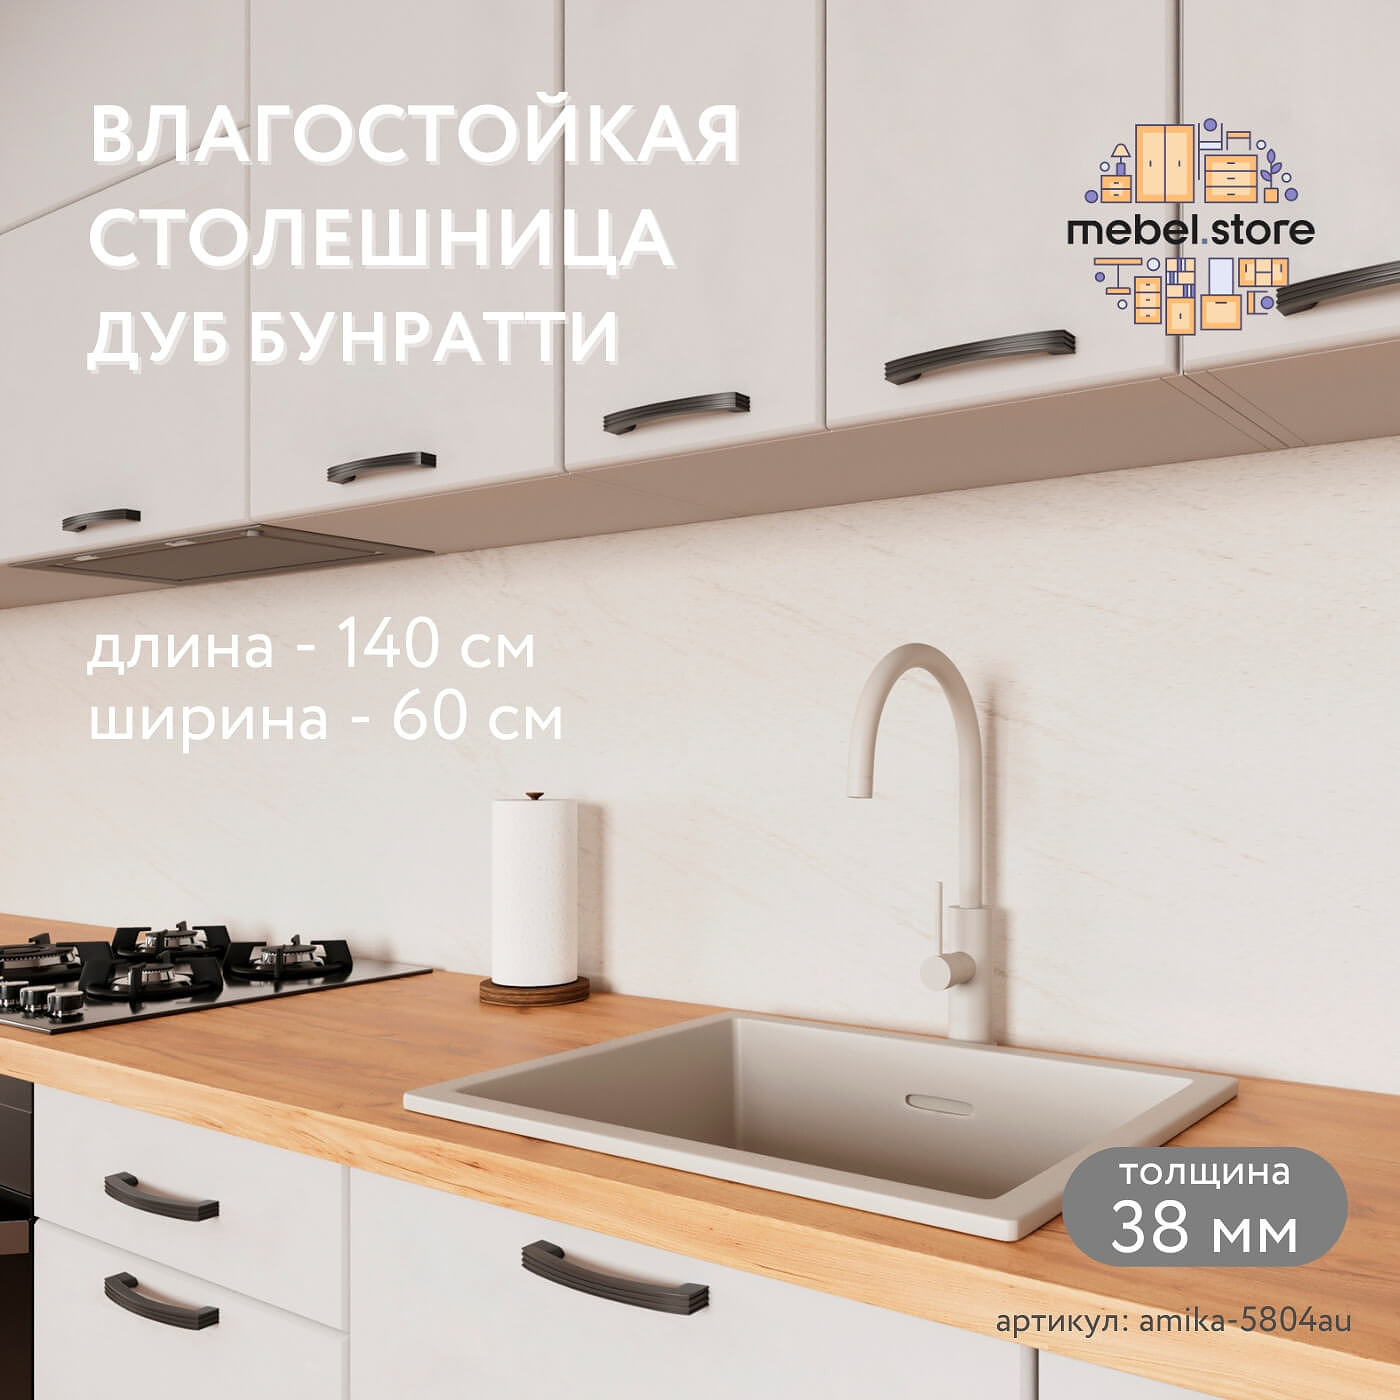 Столешница Амика-5804au минимализм для кухни - фото 1 large